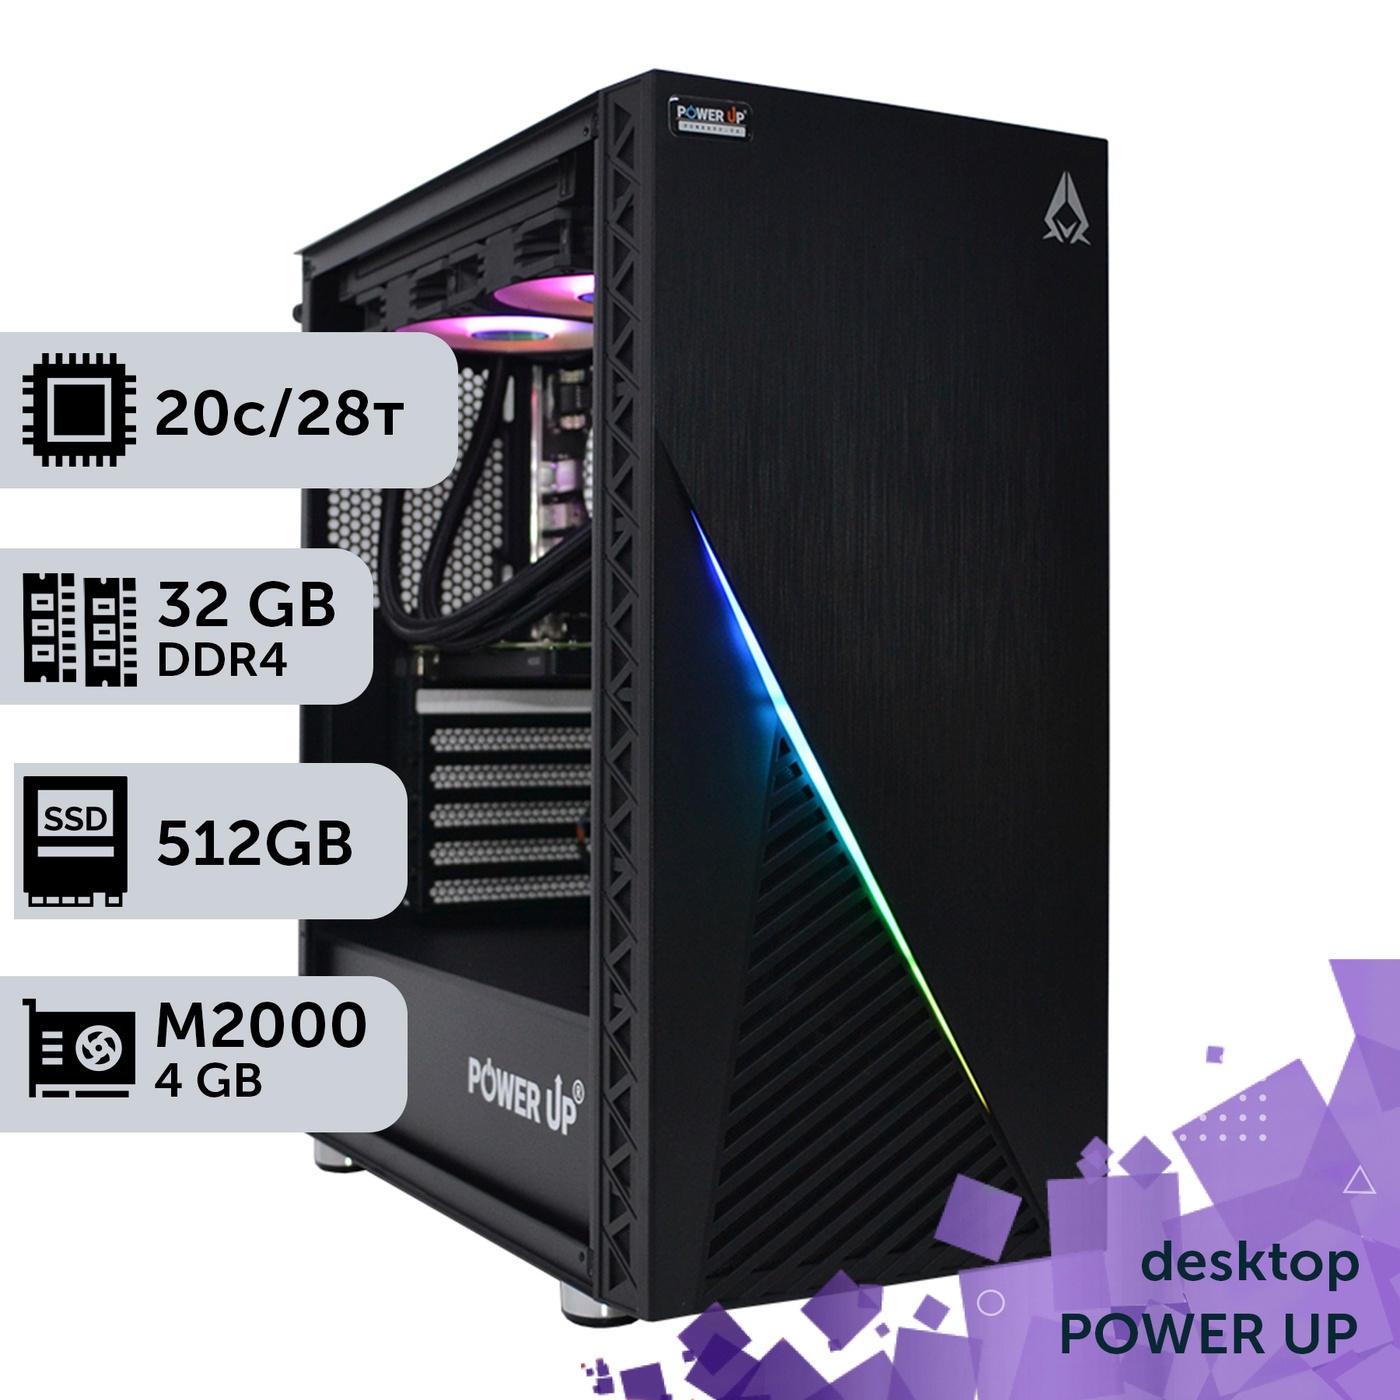 Рабочая станция PowerUp Desktop #308 Core i7 14700K/32 GB/SSD 512GB/NVIDIA Quadro M2000 4GB